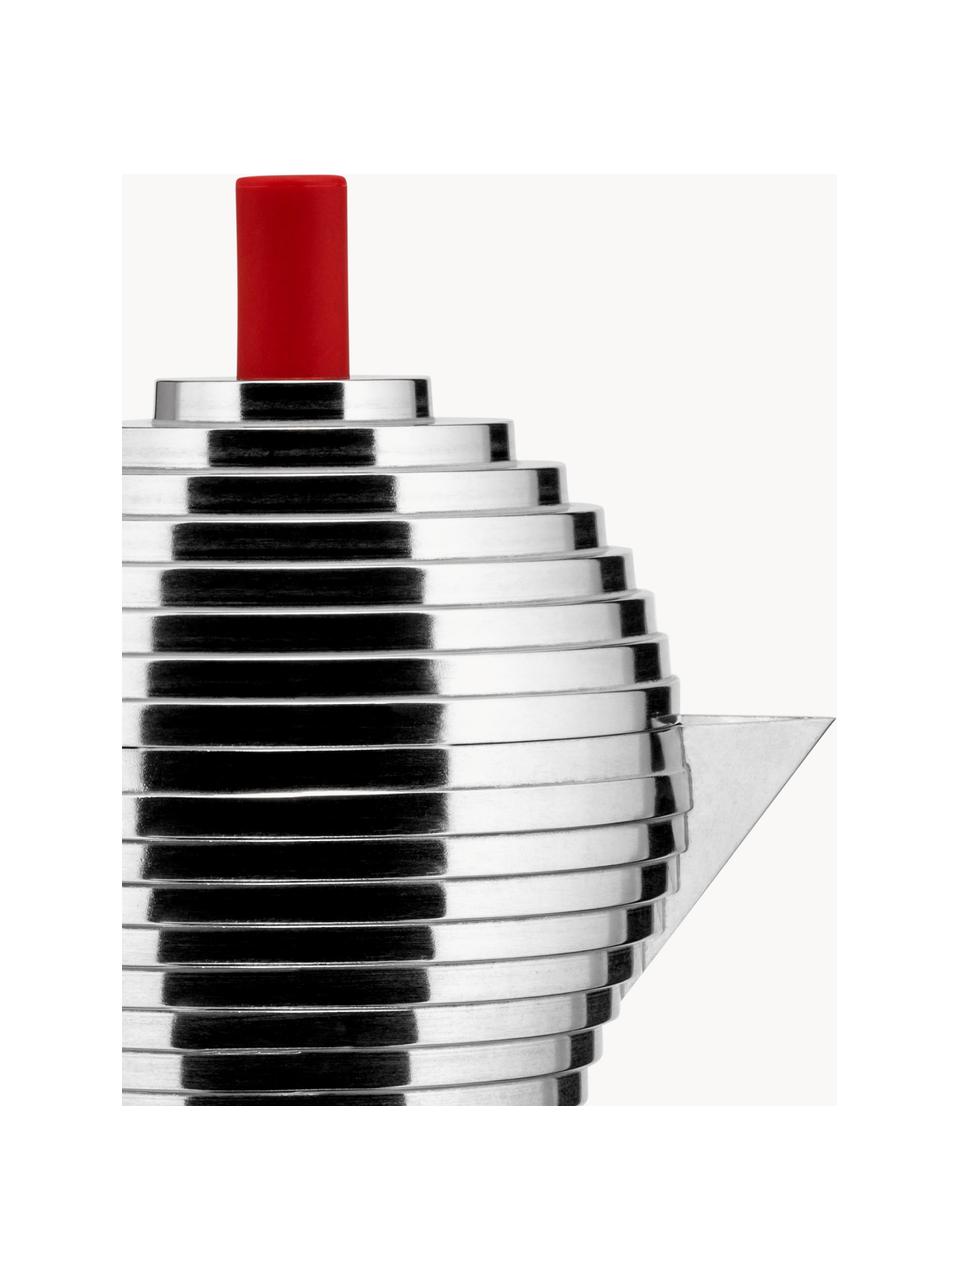 Espressokocher Pulcina, Gehäuse: Aluminiumguss, Griffe: Polyamid, Silberfarben, glänzend, Rot, B 20 x H 26 cm, für sechs Tassen